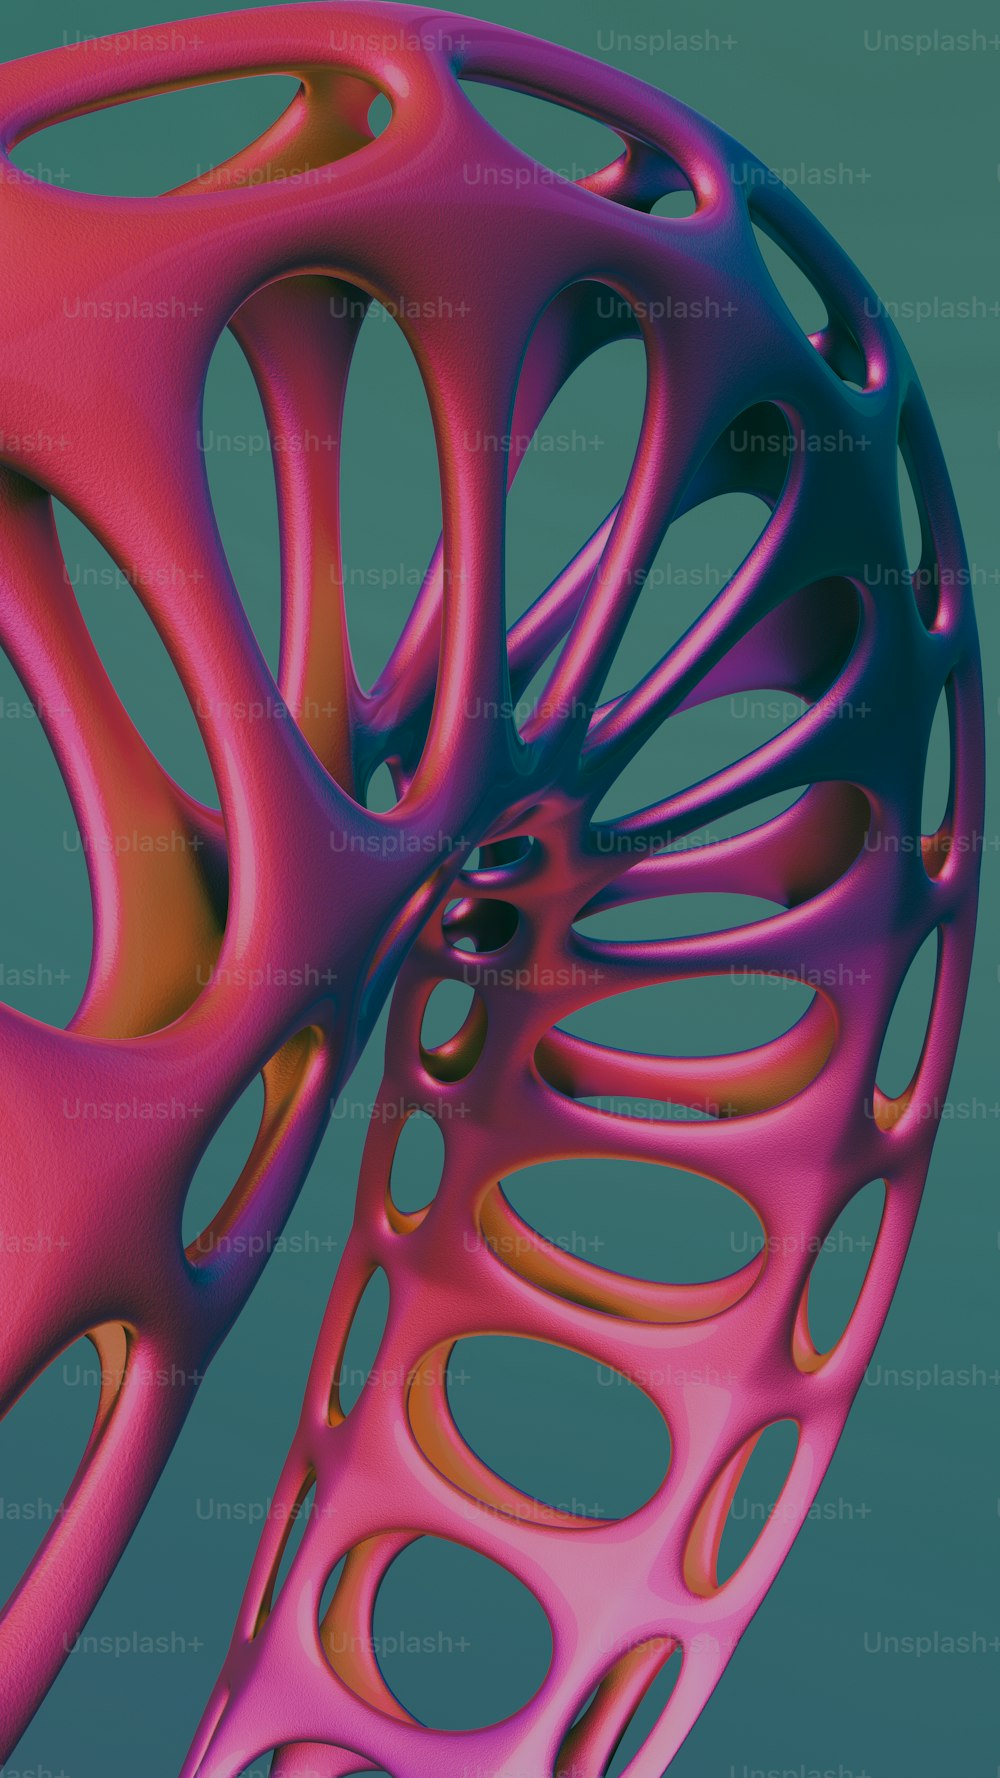 Une image 3D d’un objet rose et bleu